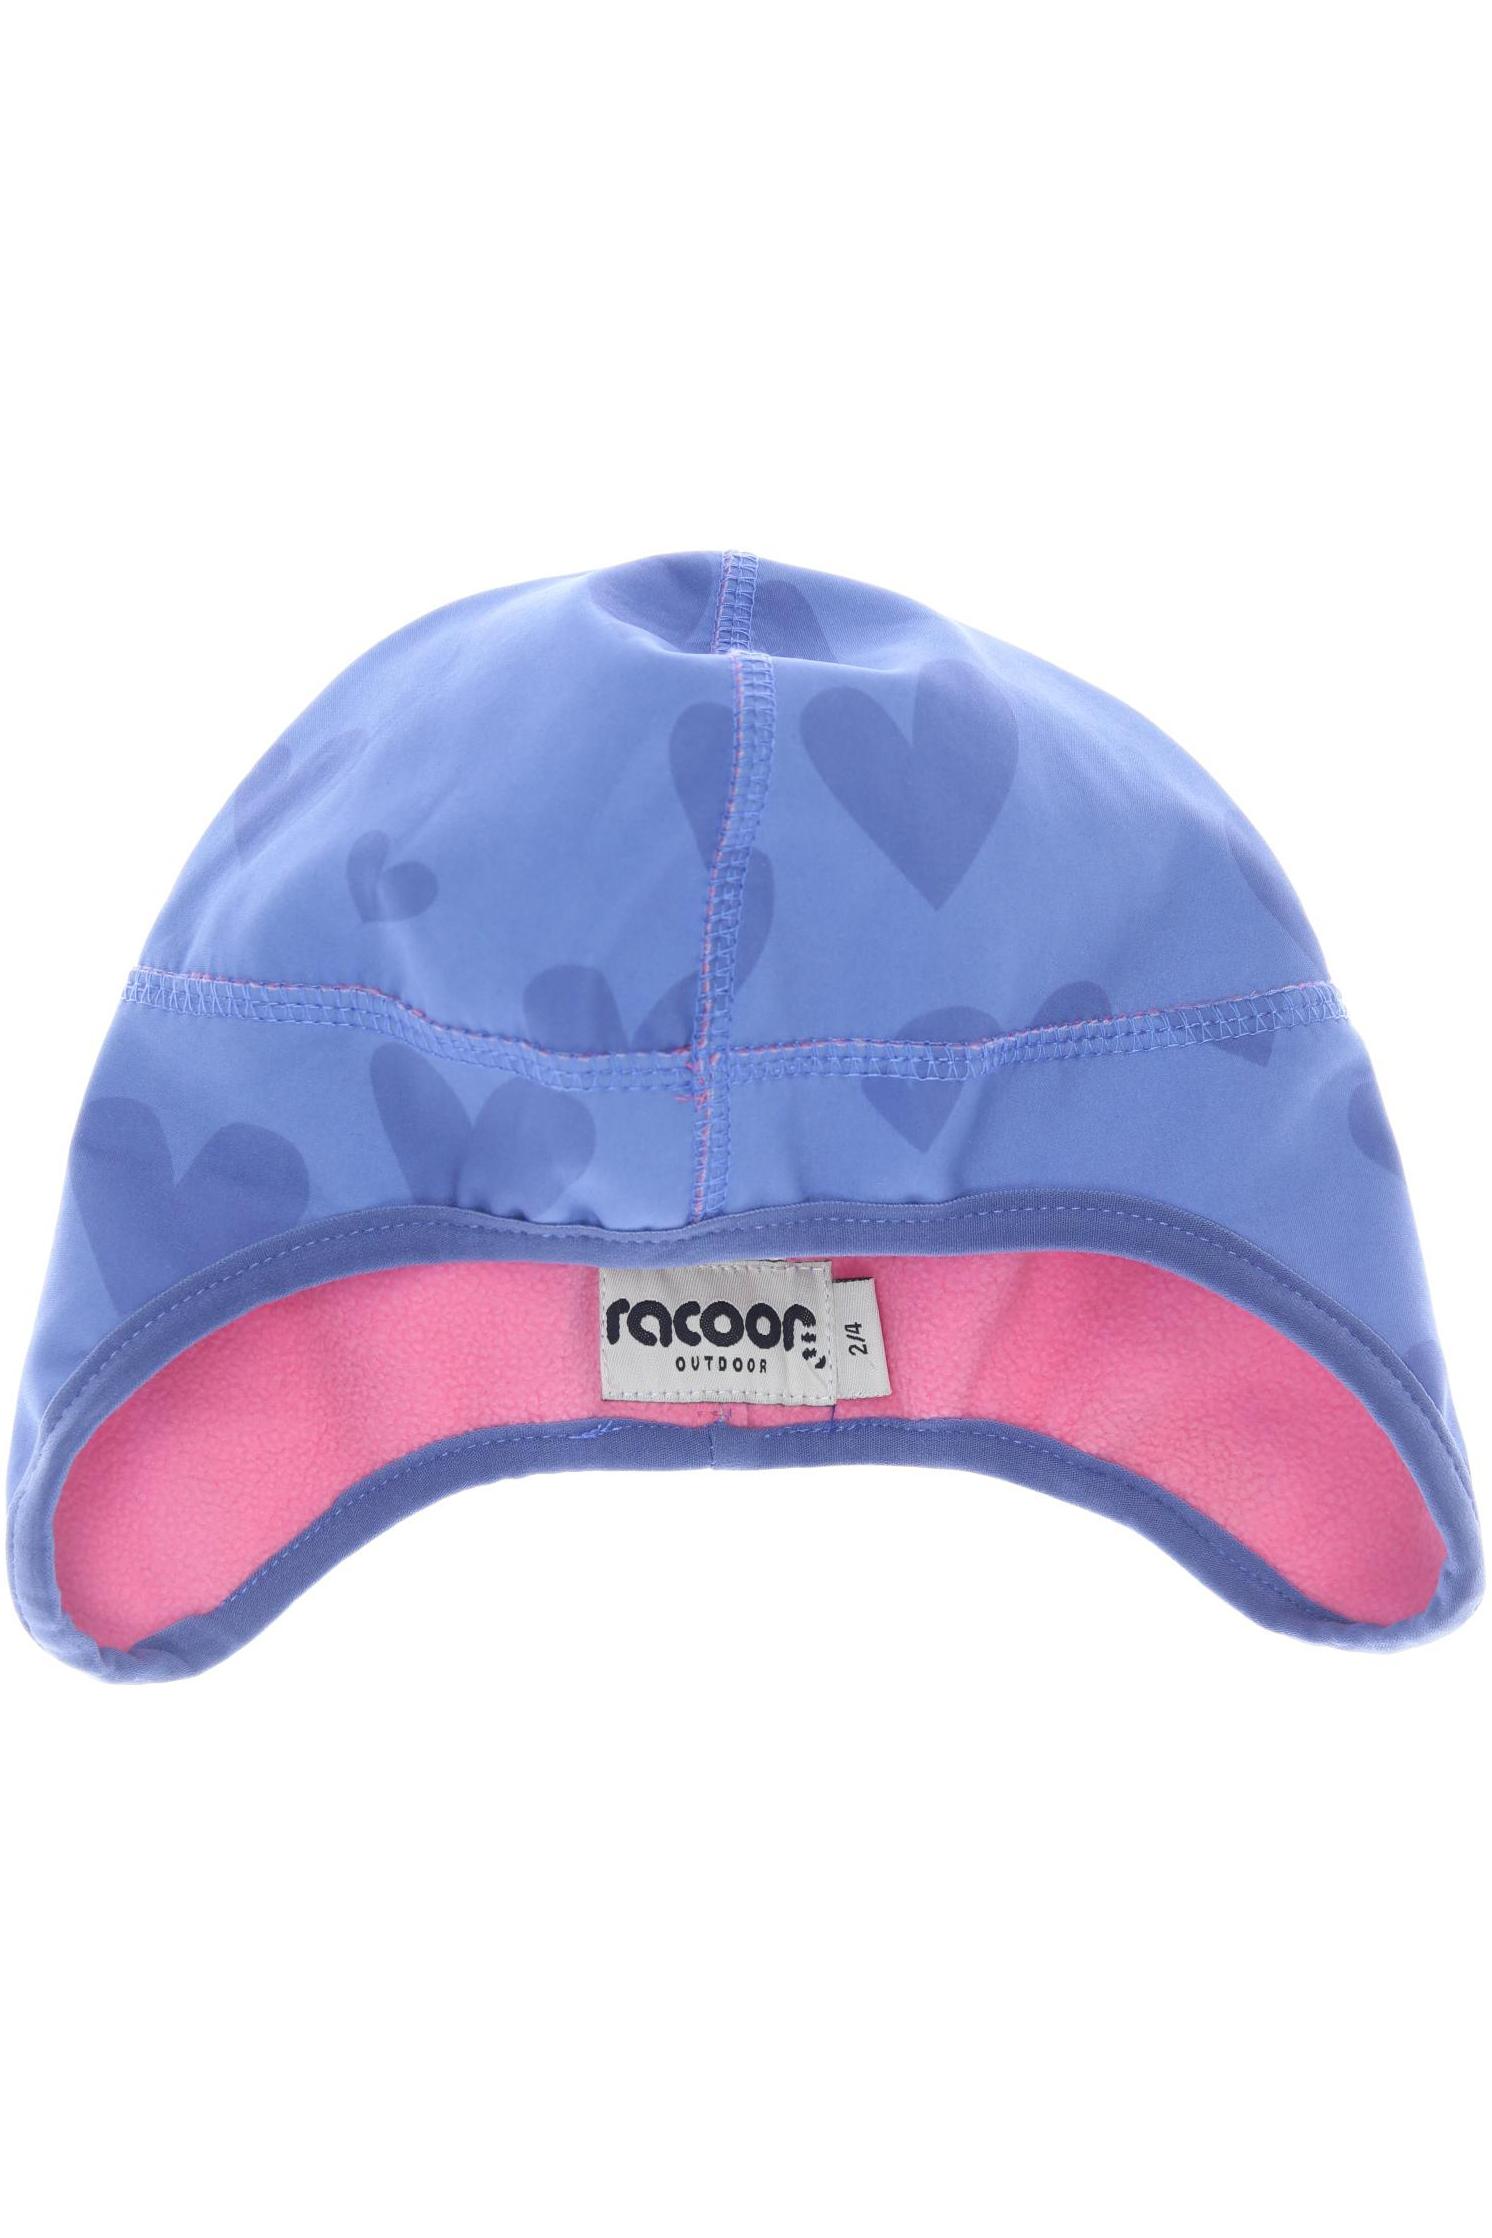 racoon Jungen Hut/Mütze, blau von racoon